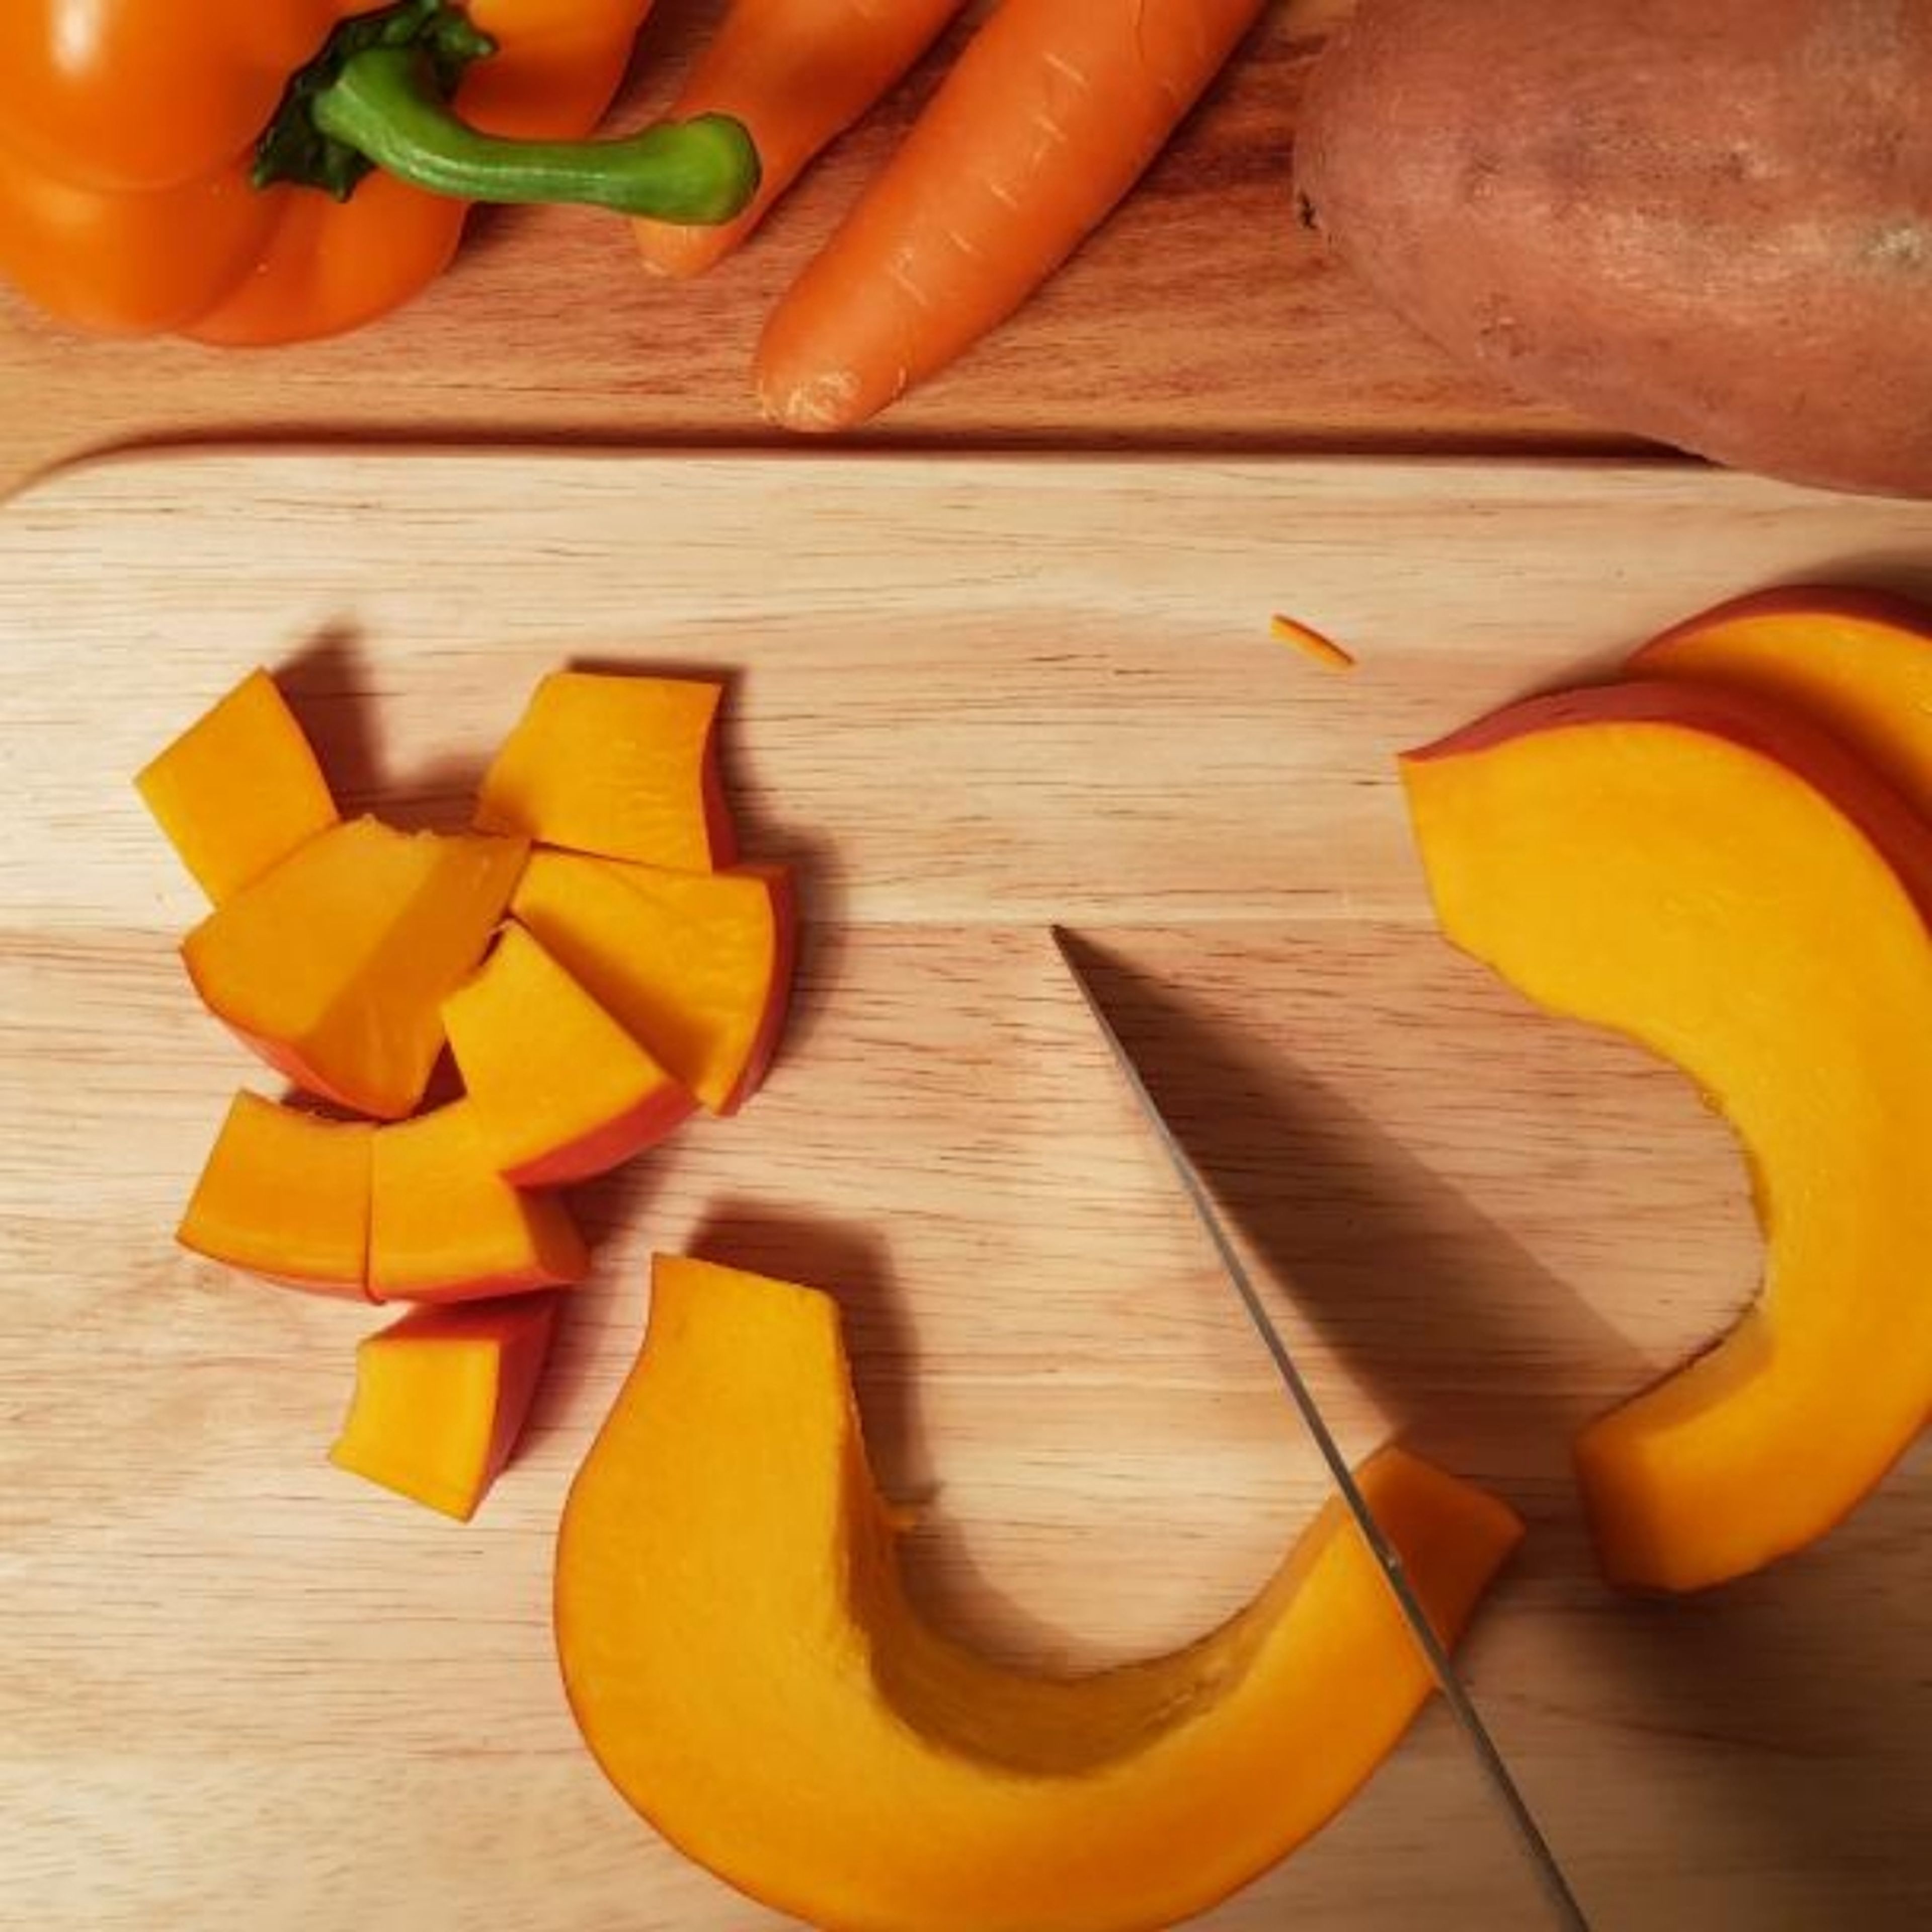 Backofen auf 200° Ober- und Unterhitze vorheizen. Kürbis und Süßkartoffel in etwa 1 cm große Stücke schneiden. Karotten und Paprika in Streifen schneiden. Das geschnittene Gemüse in die Auflaufform geben.